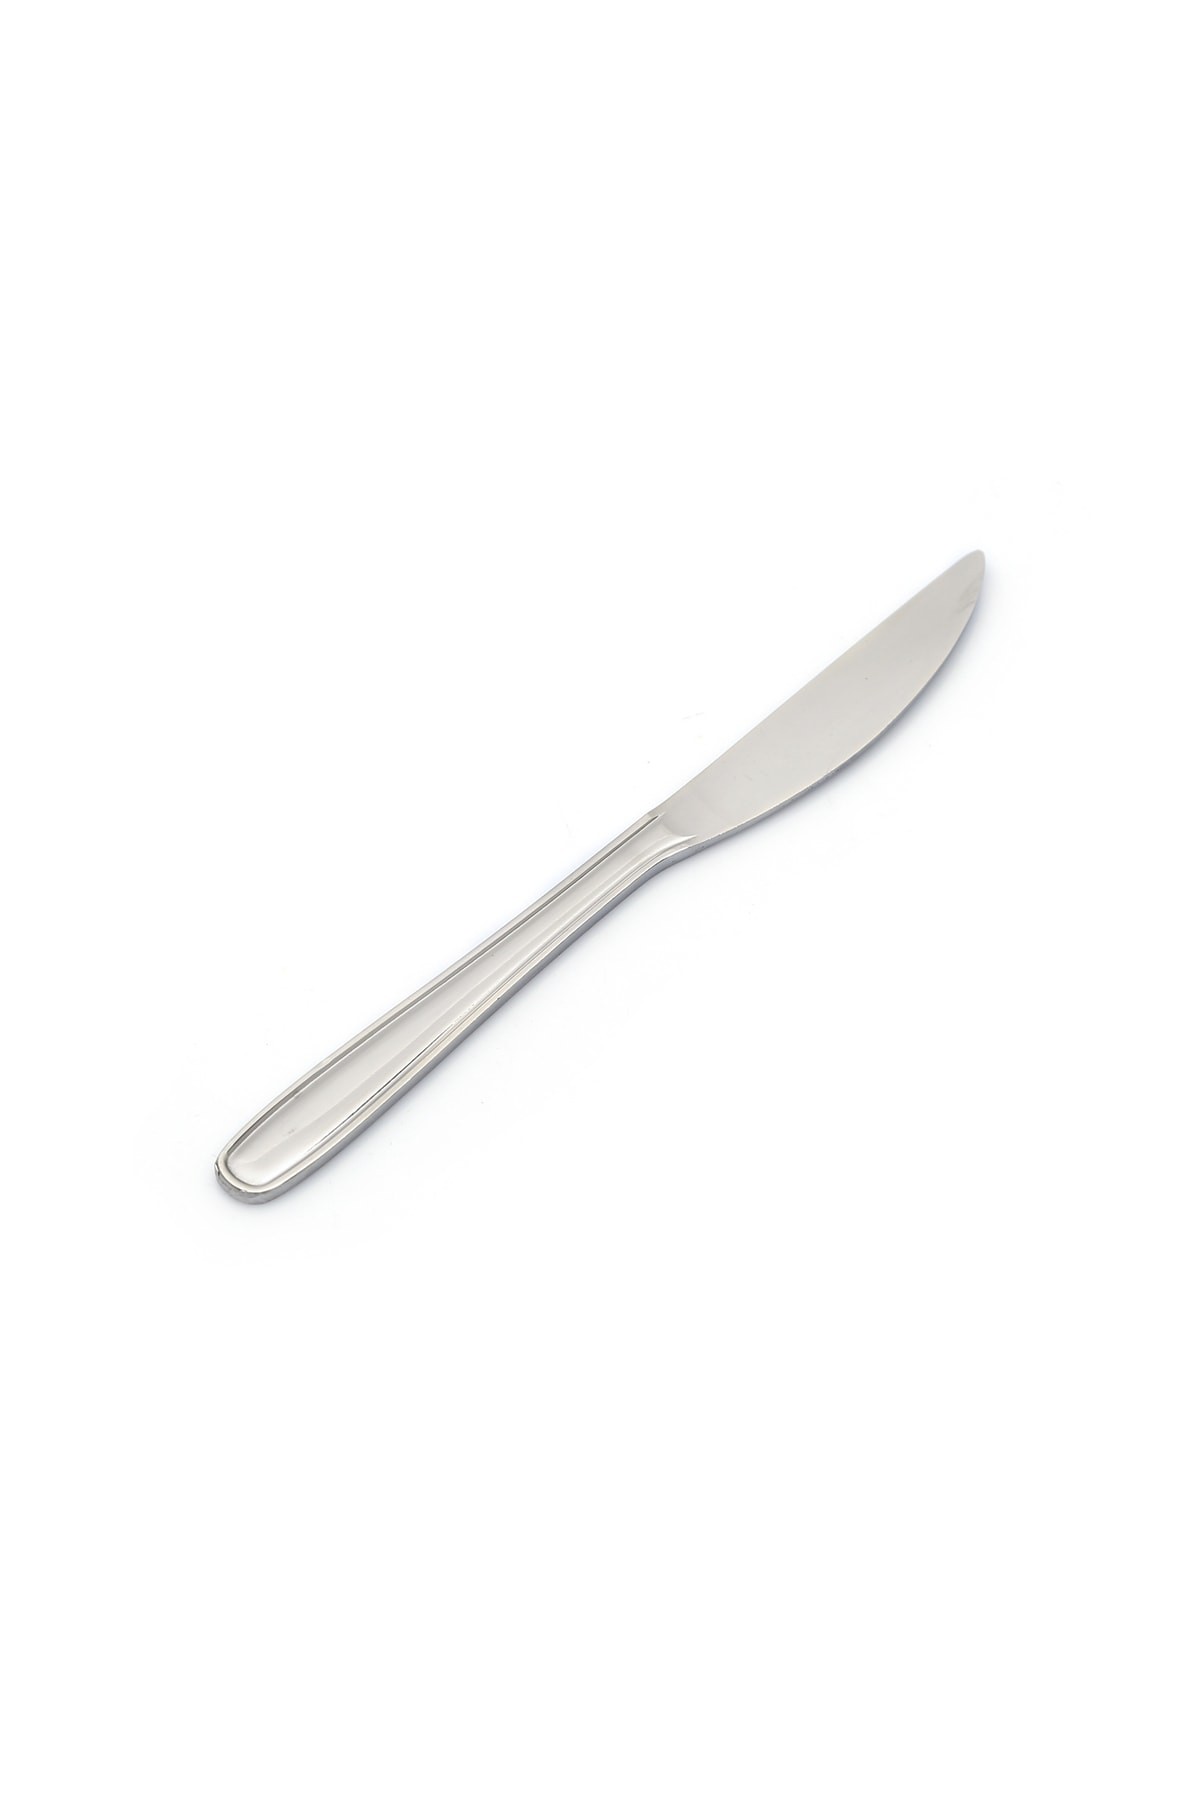 Paslanmaz Çelik Tatlı Bıçağı Sade 1 Düzine (12)